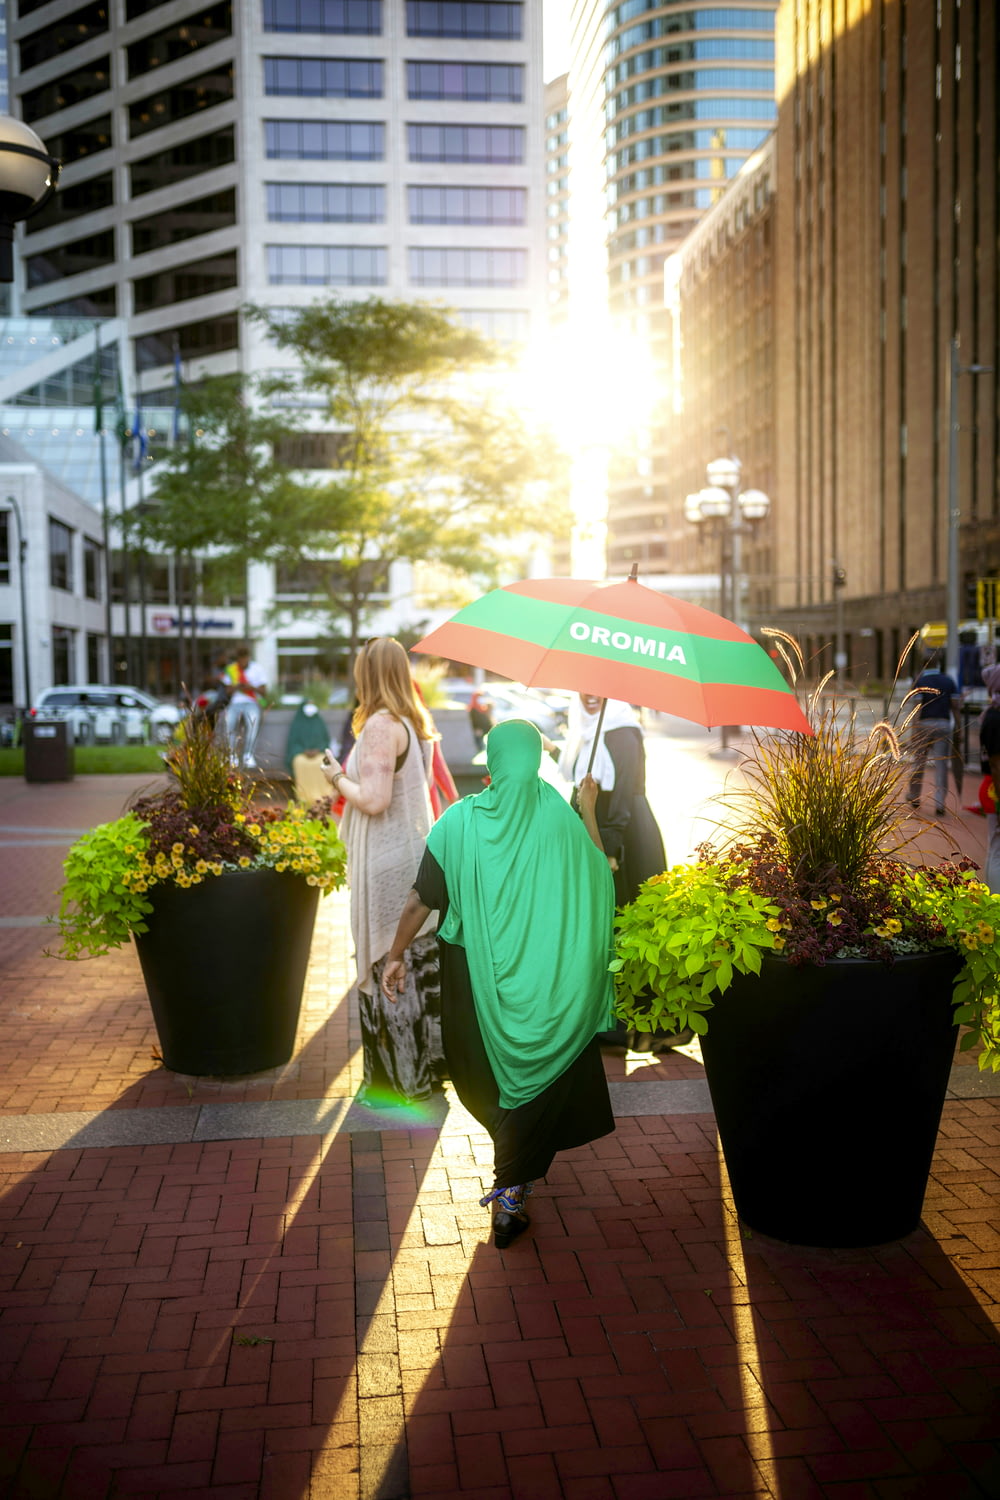 昼間、緑の鉢植えのそばに傘をさす緑のパーカーを着た女性